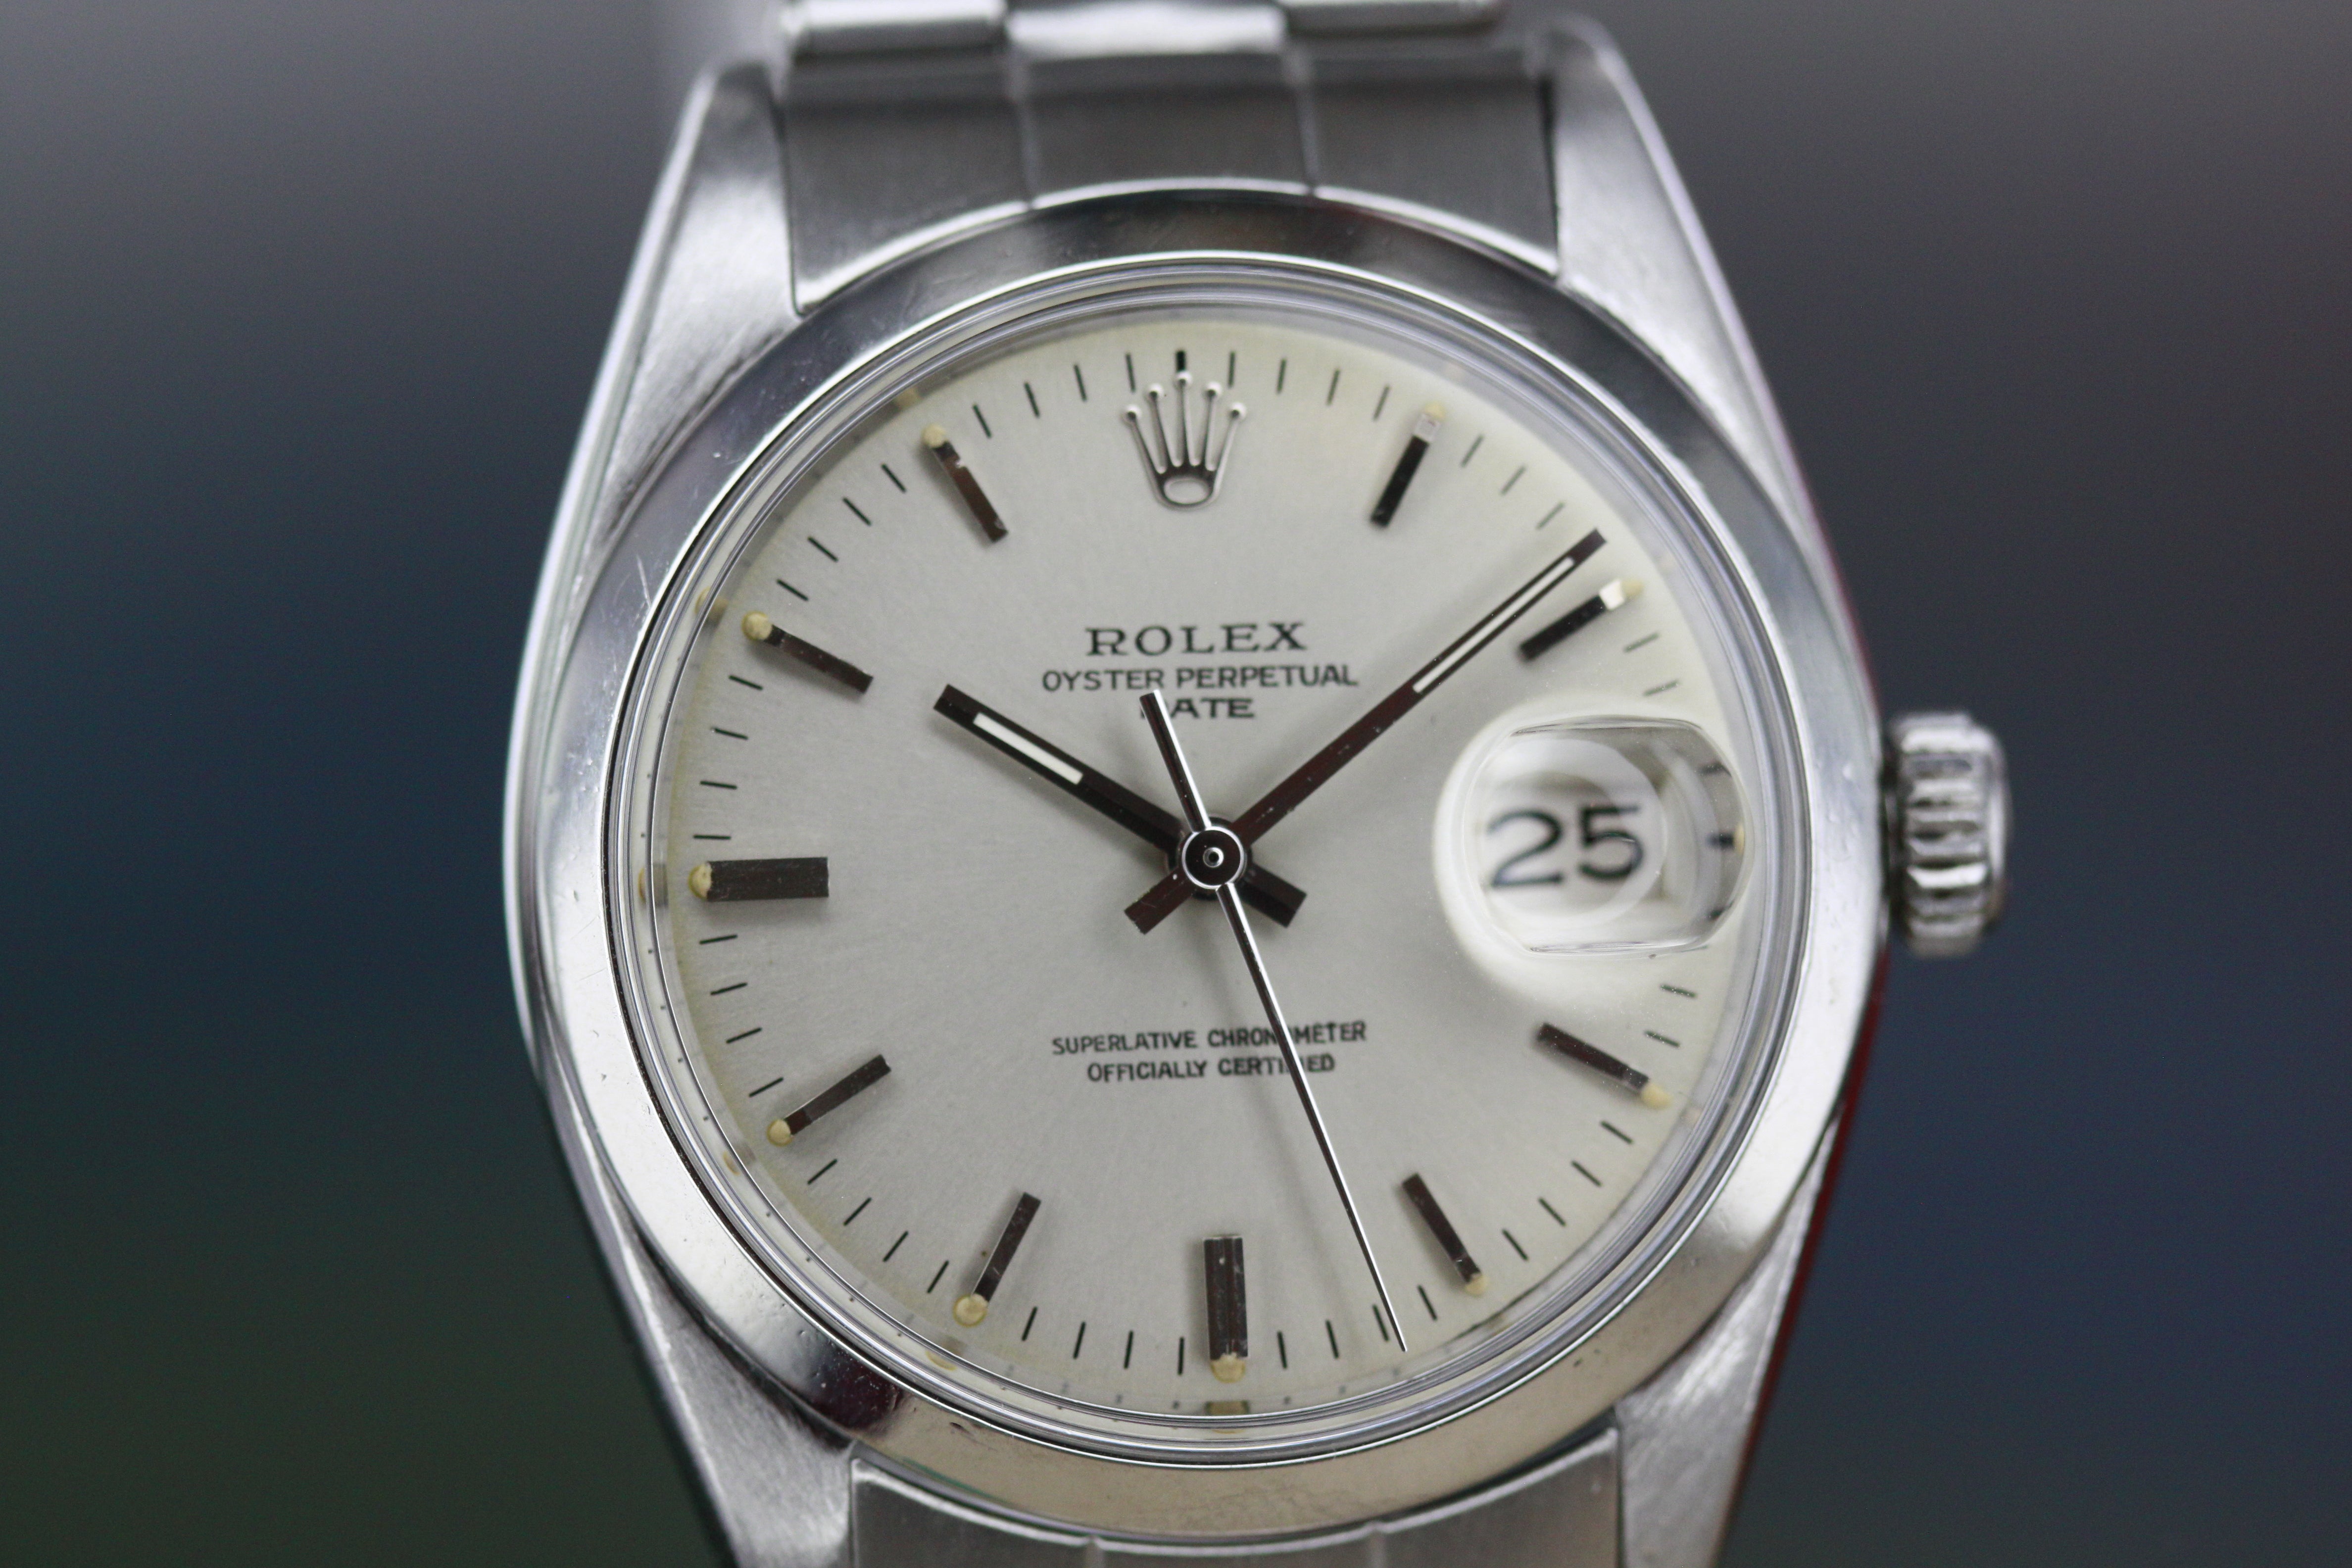 Rolex Oyster Perpetual Date Tritium Dial Ref.1500 ca.1966